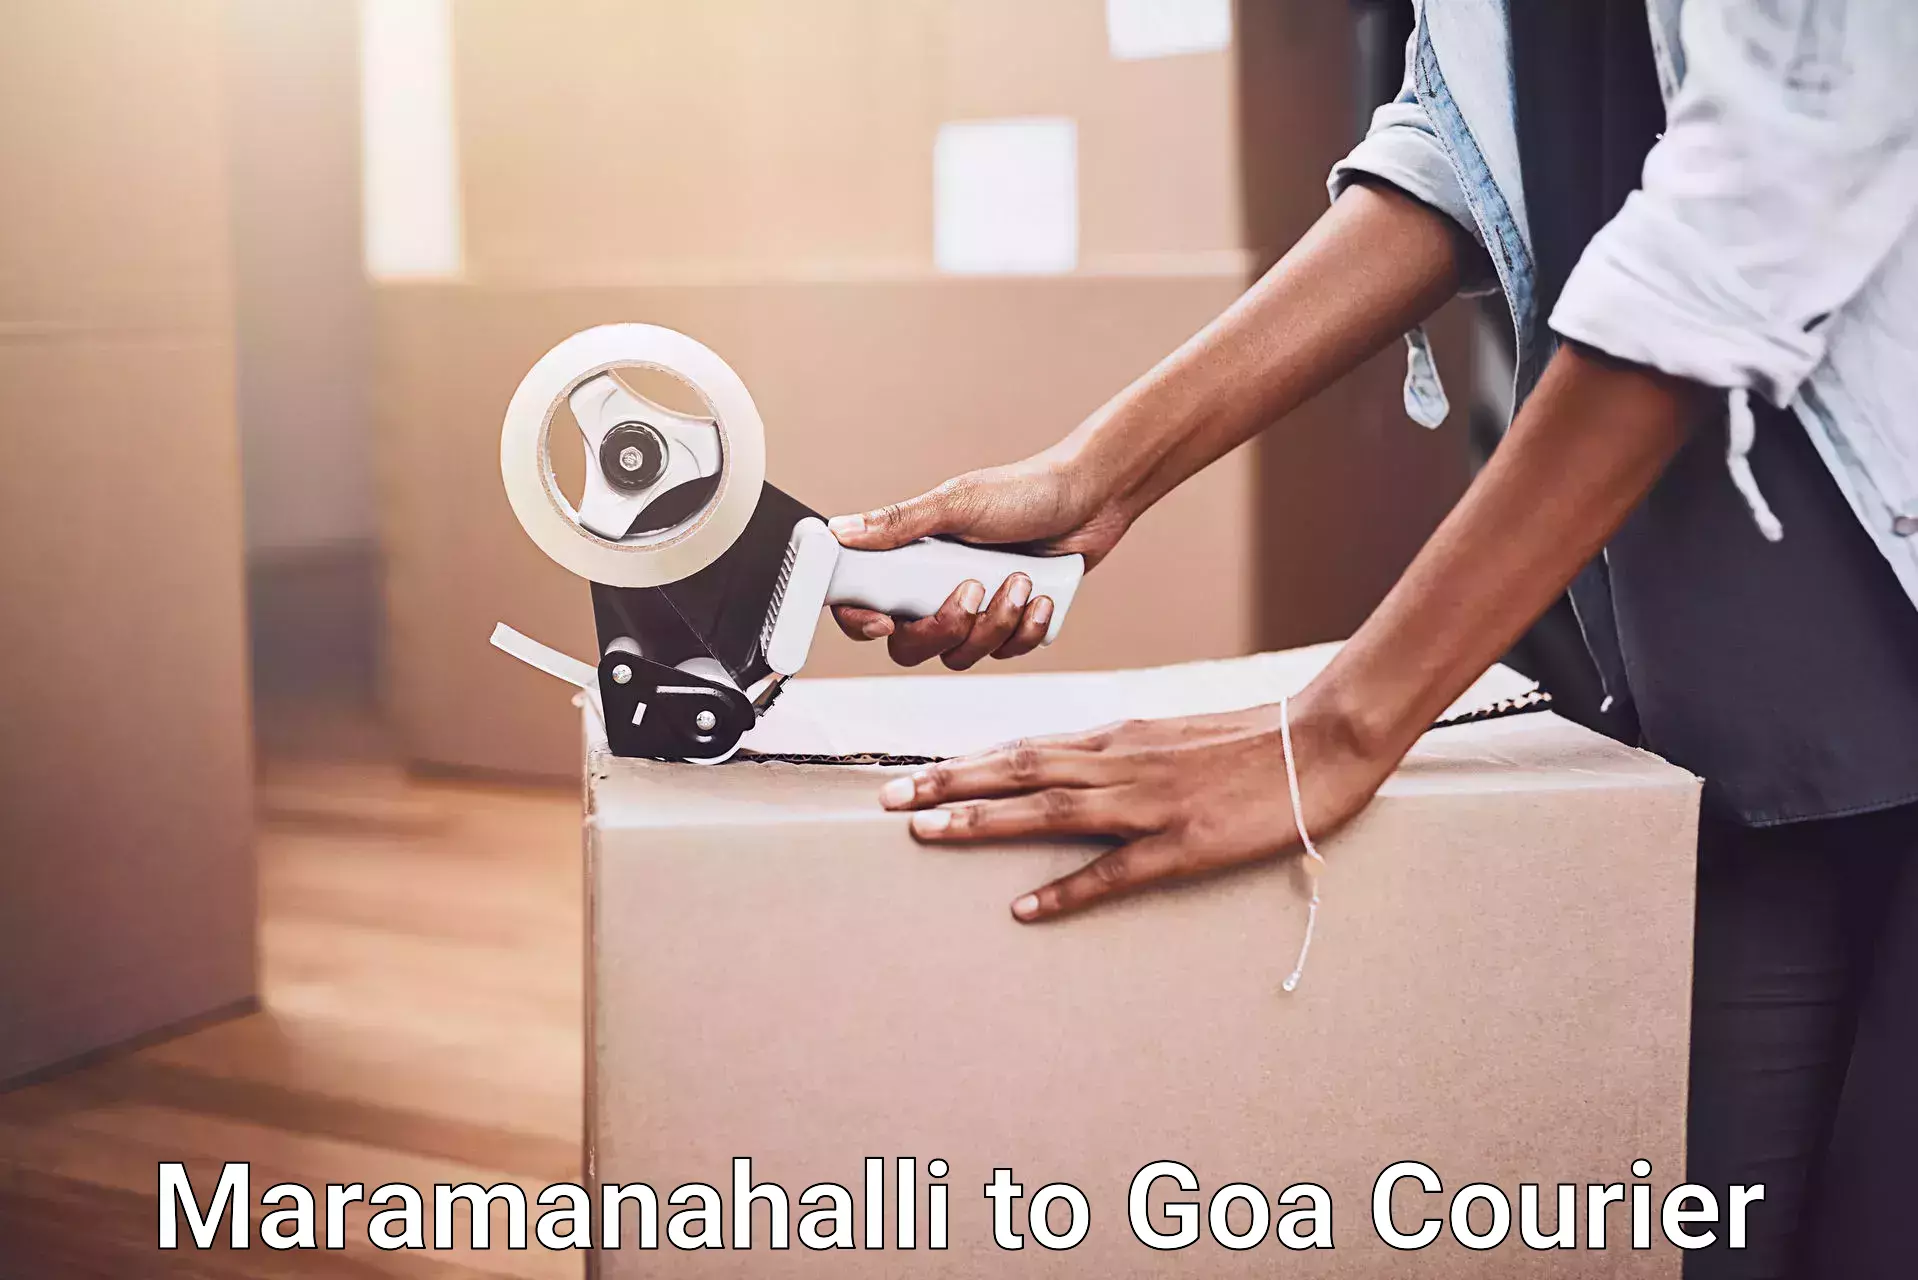 Furniture movers and packers Maramanahalli to IIT Goa